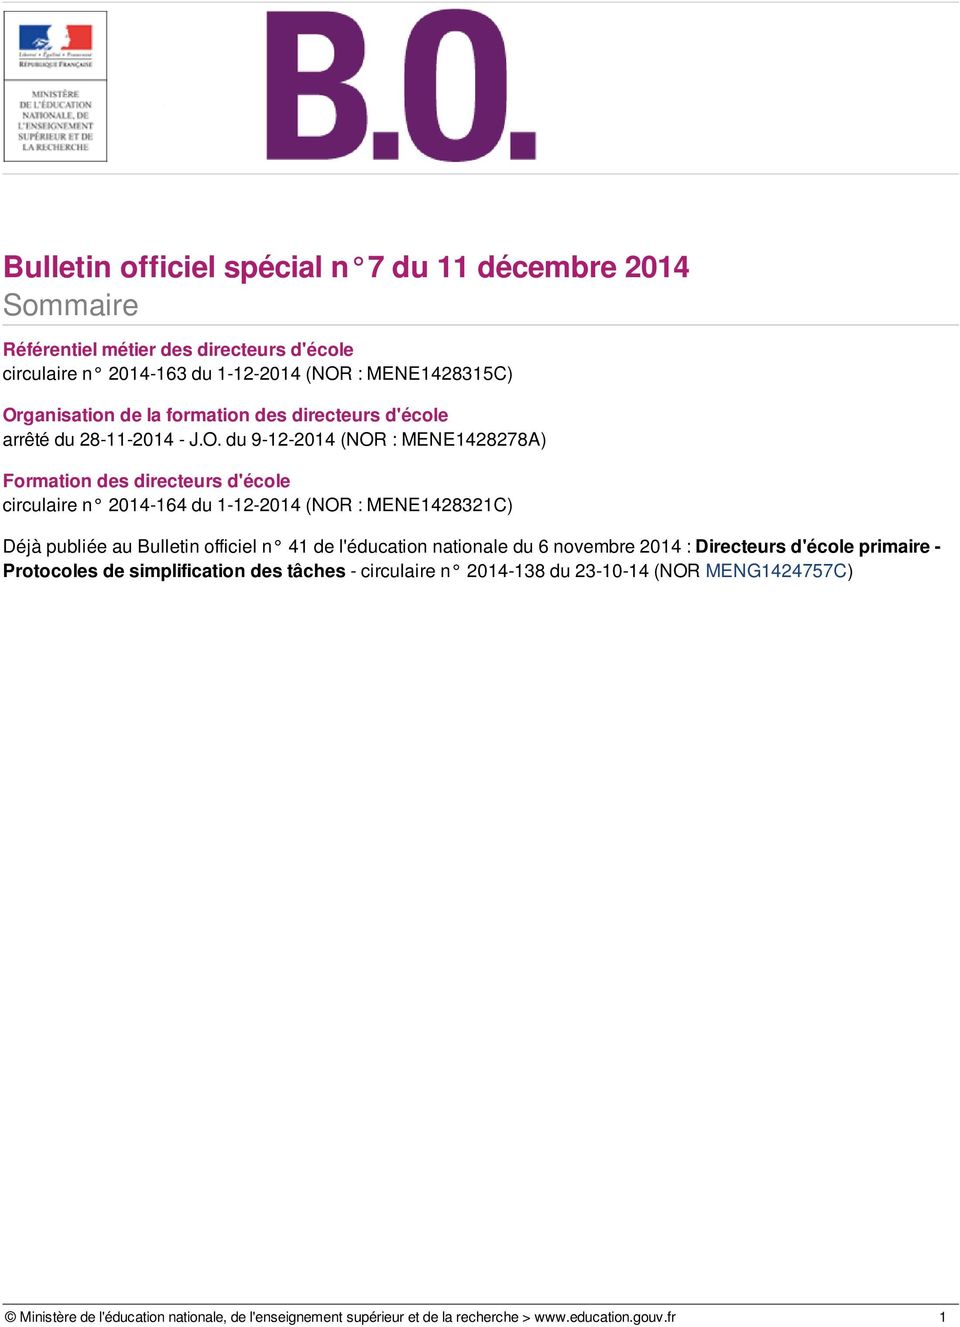 du 9-12-2014 (NOR : MENE1428278A) Formation des directeurs d'école circulaire n 2014-164 du 1-12-2014 (NOR : MENE1428321C) Déjà publiée au Bulletin officiel